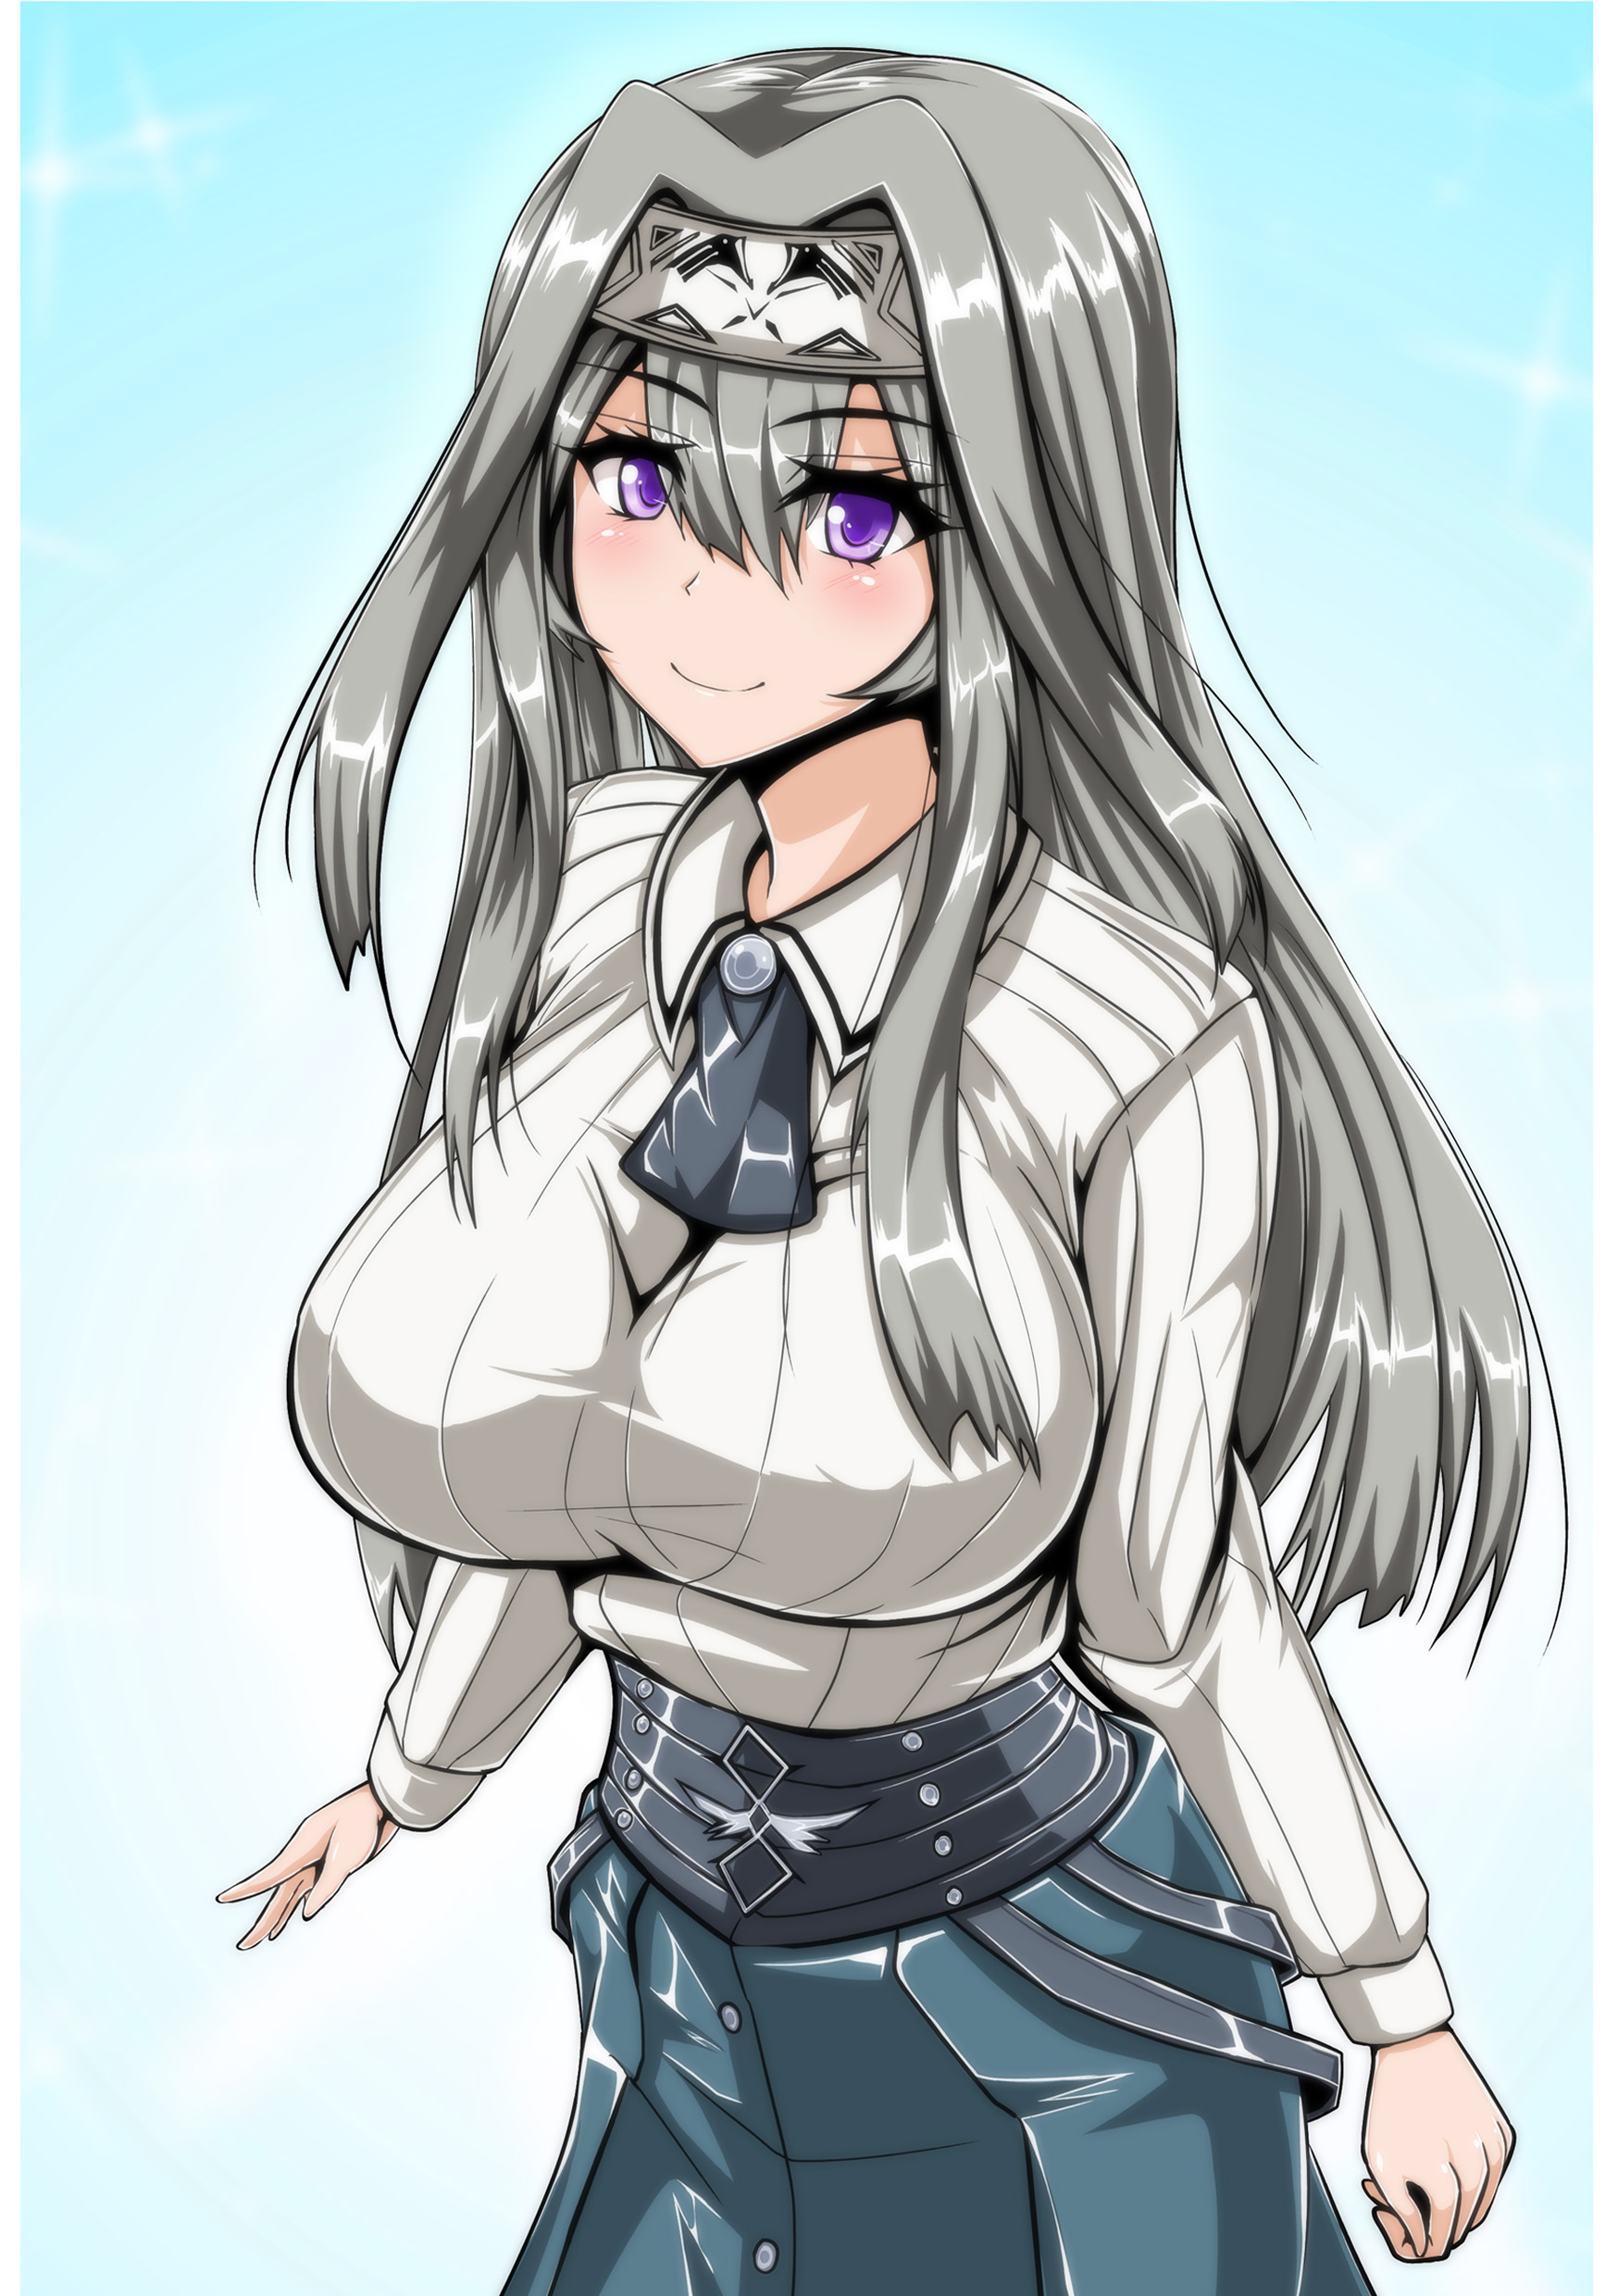 Exosister Irene Long Hair Gray Hair Yu Gi Oh Anime Anime Girls Trading Card Games Artwork 3785